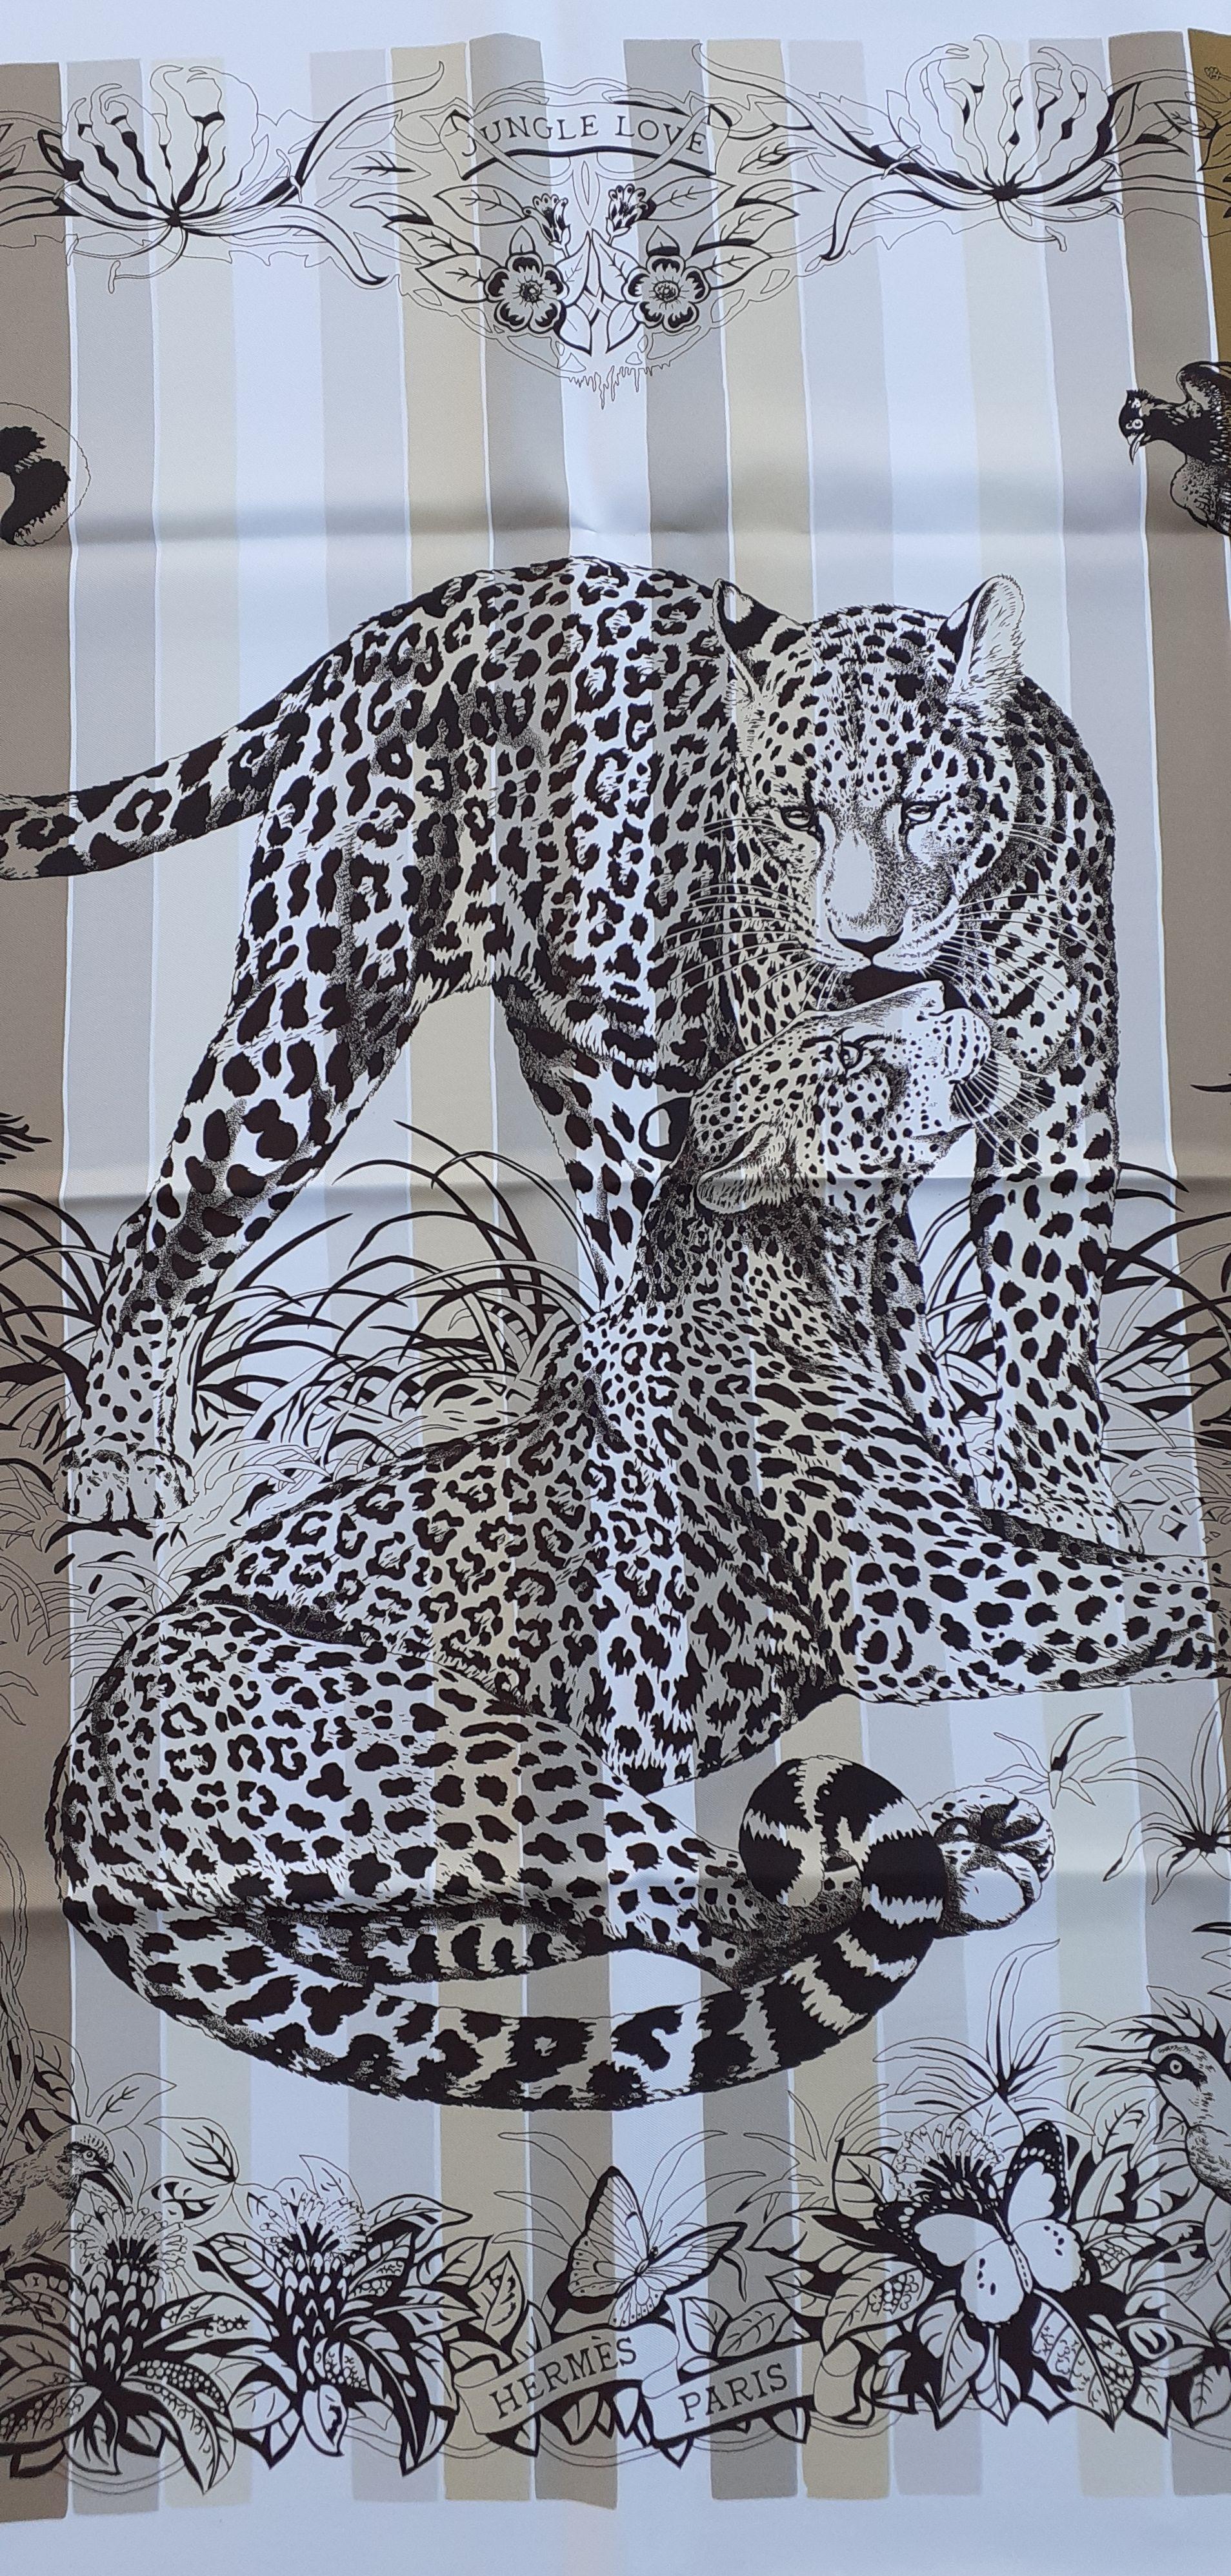 Hermès Silk Scarf Jungle Love Rainbow Rober DALLET White Brown 90 cm Pour femmes en vente